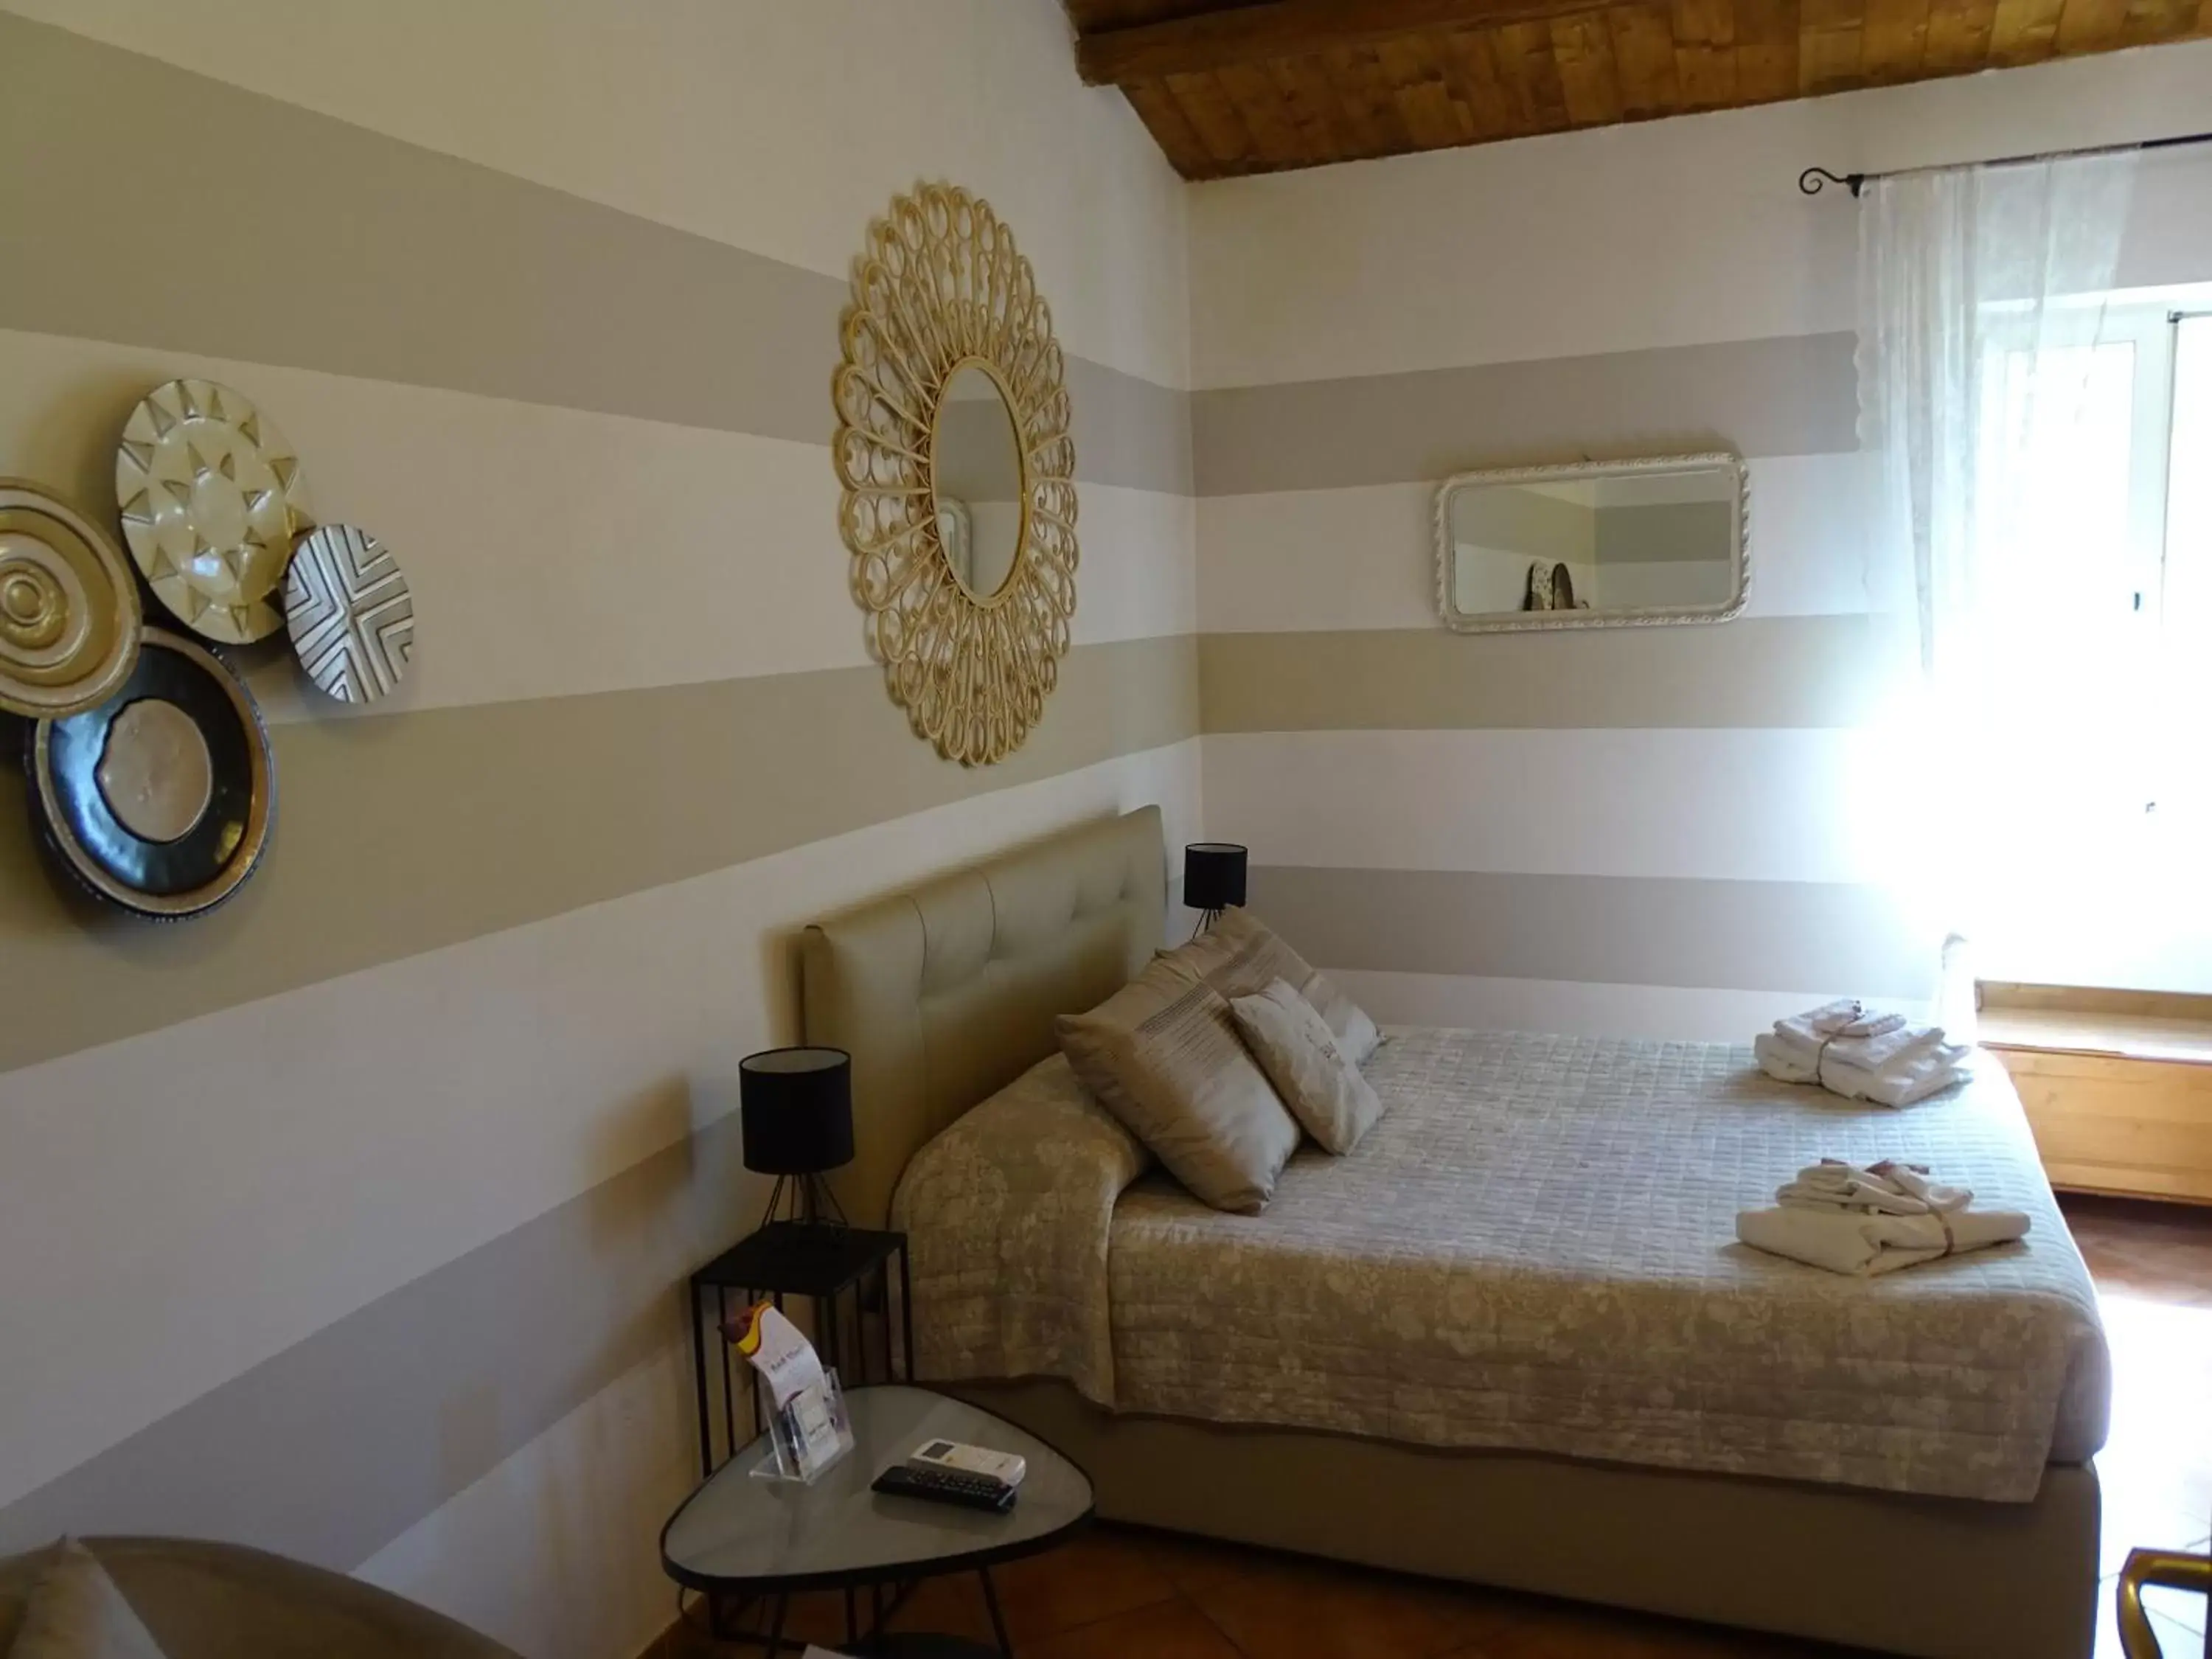 Bedroom in B&B Vinci